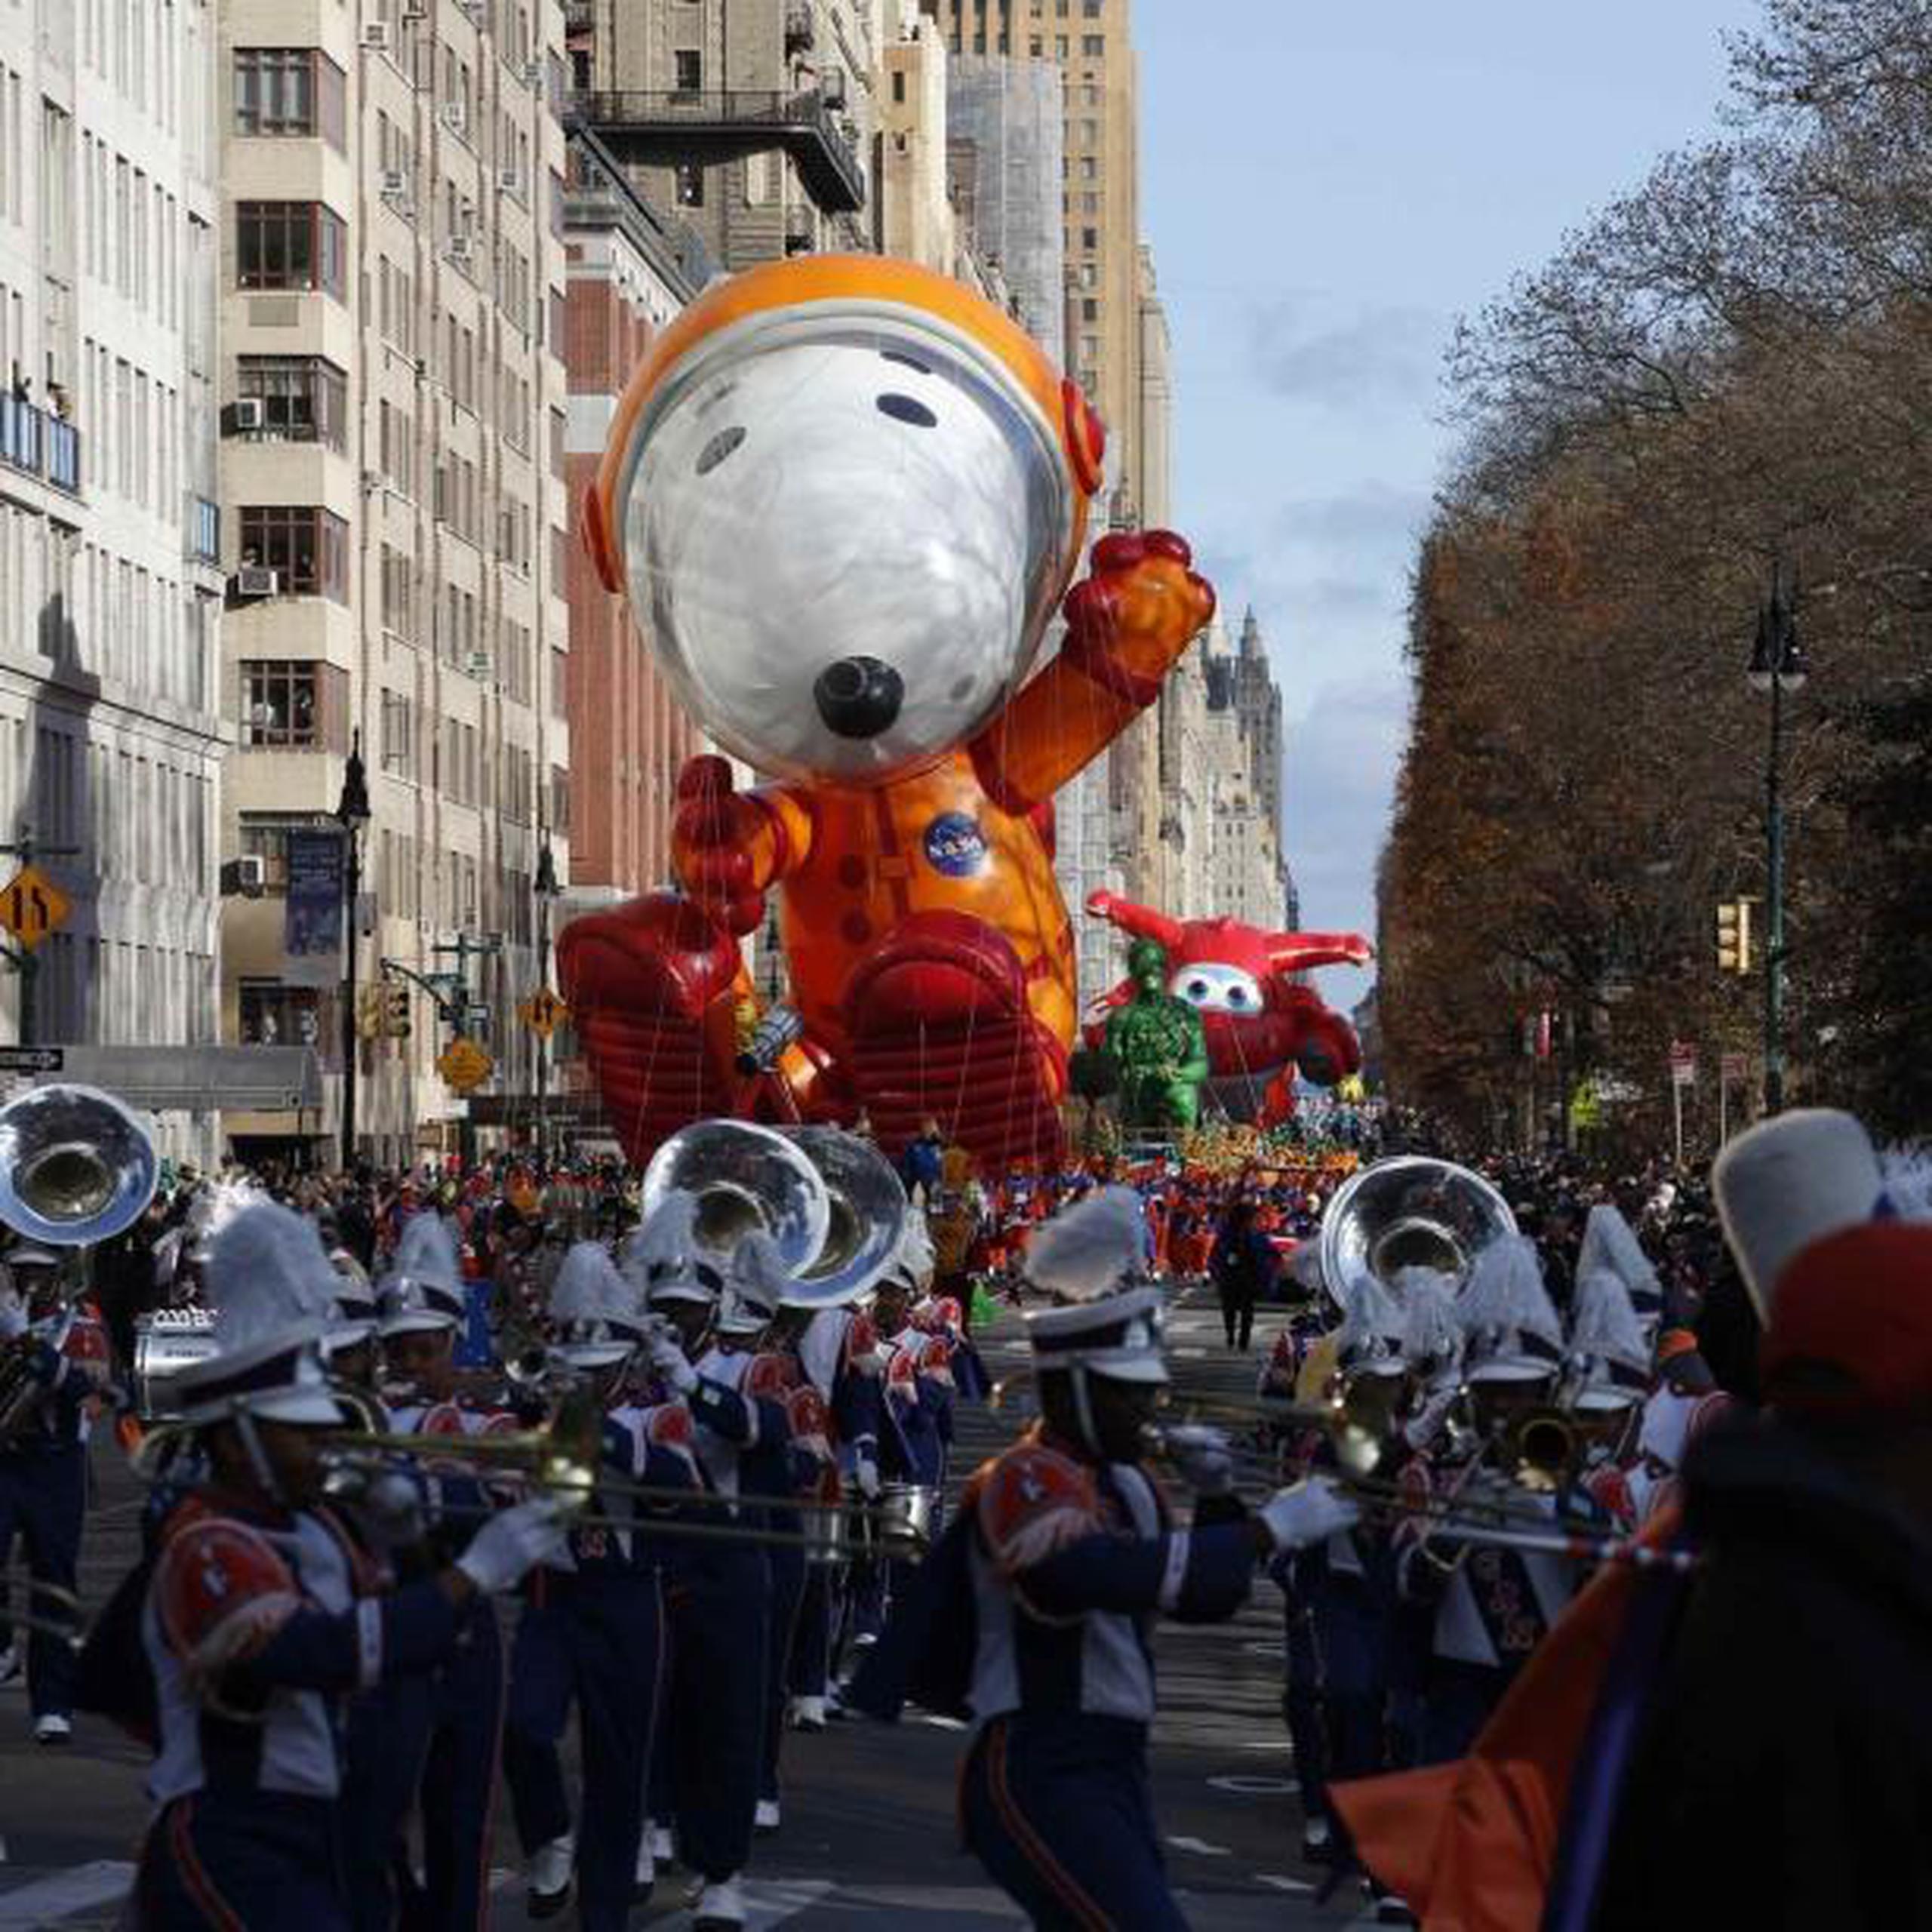 Los globos del desfile flotan entre un máximo de 55 pies y un mínimo de 10 pies de altura sobre la calle. (AP / Eduardo Muñoz Álvarez)